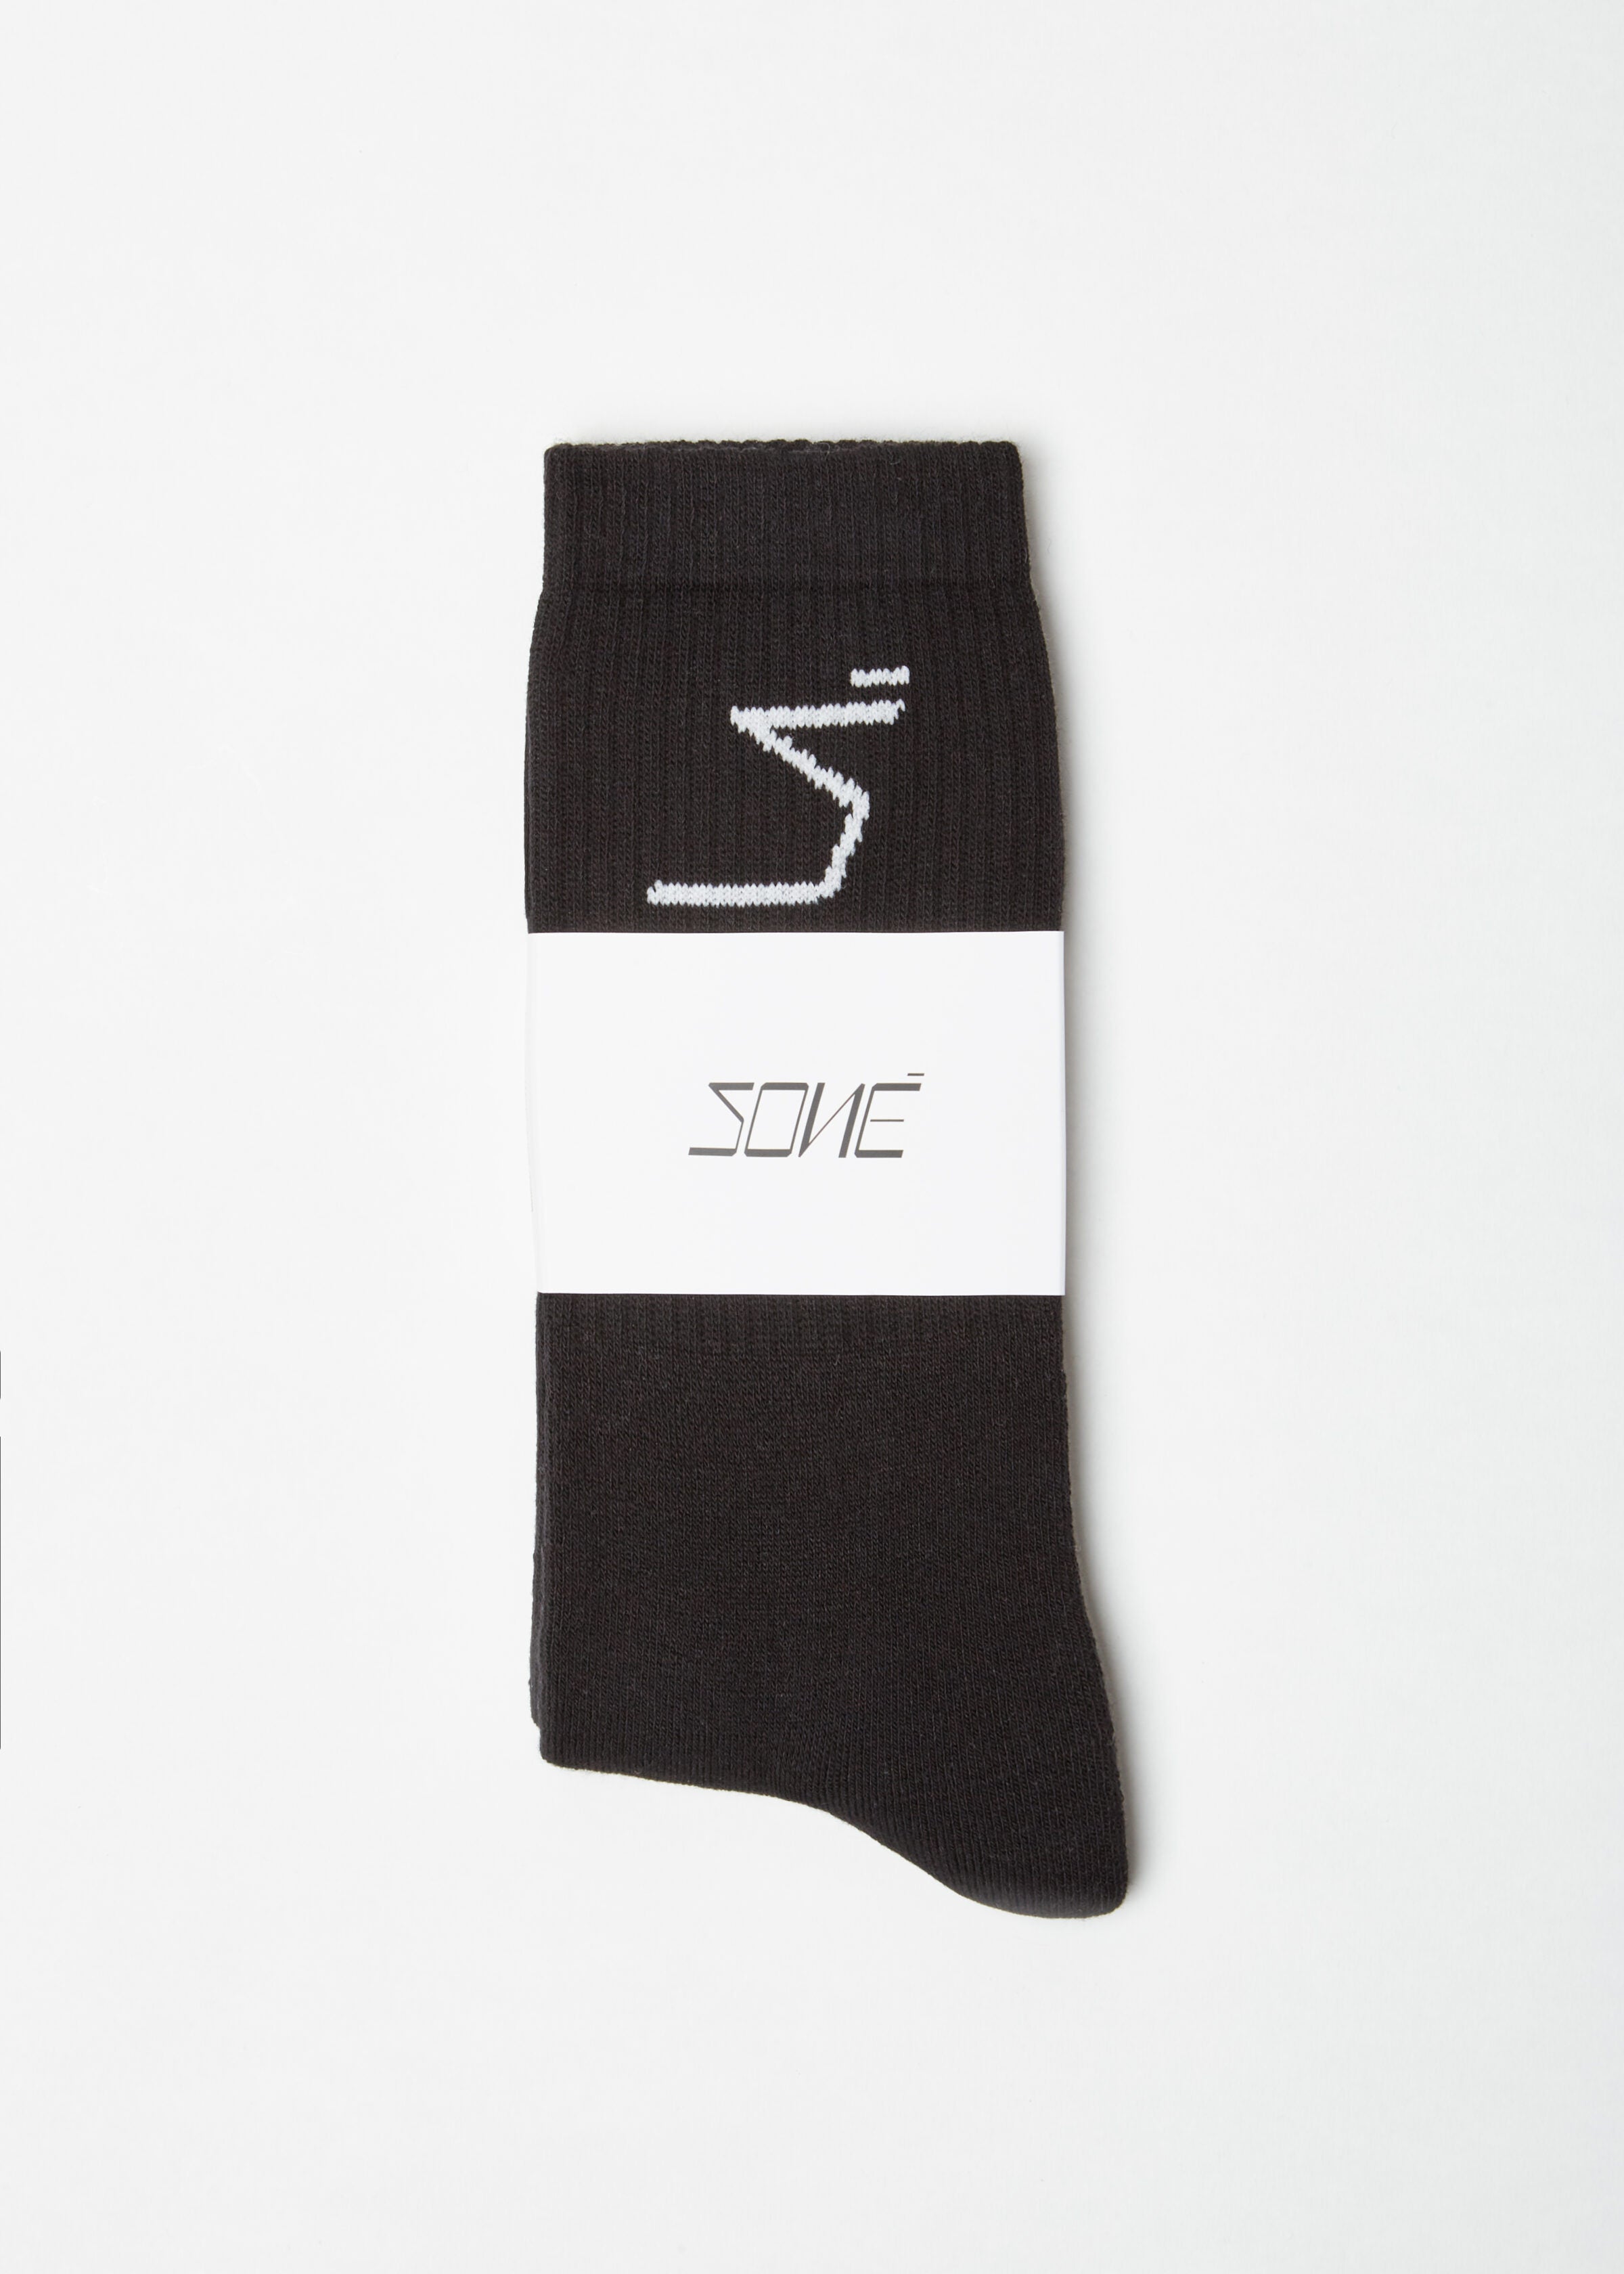 Vitus Socks Black Größe: 41-46 Farbe: black